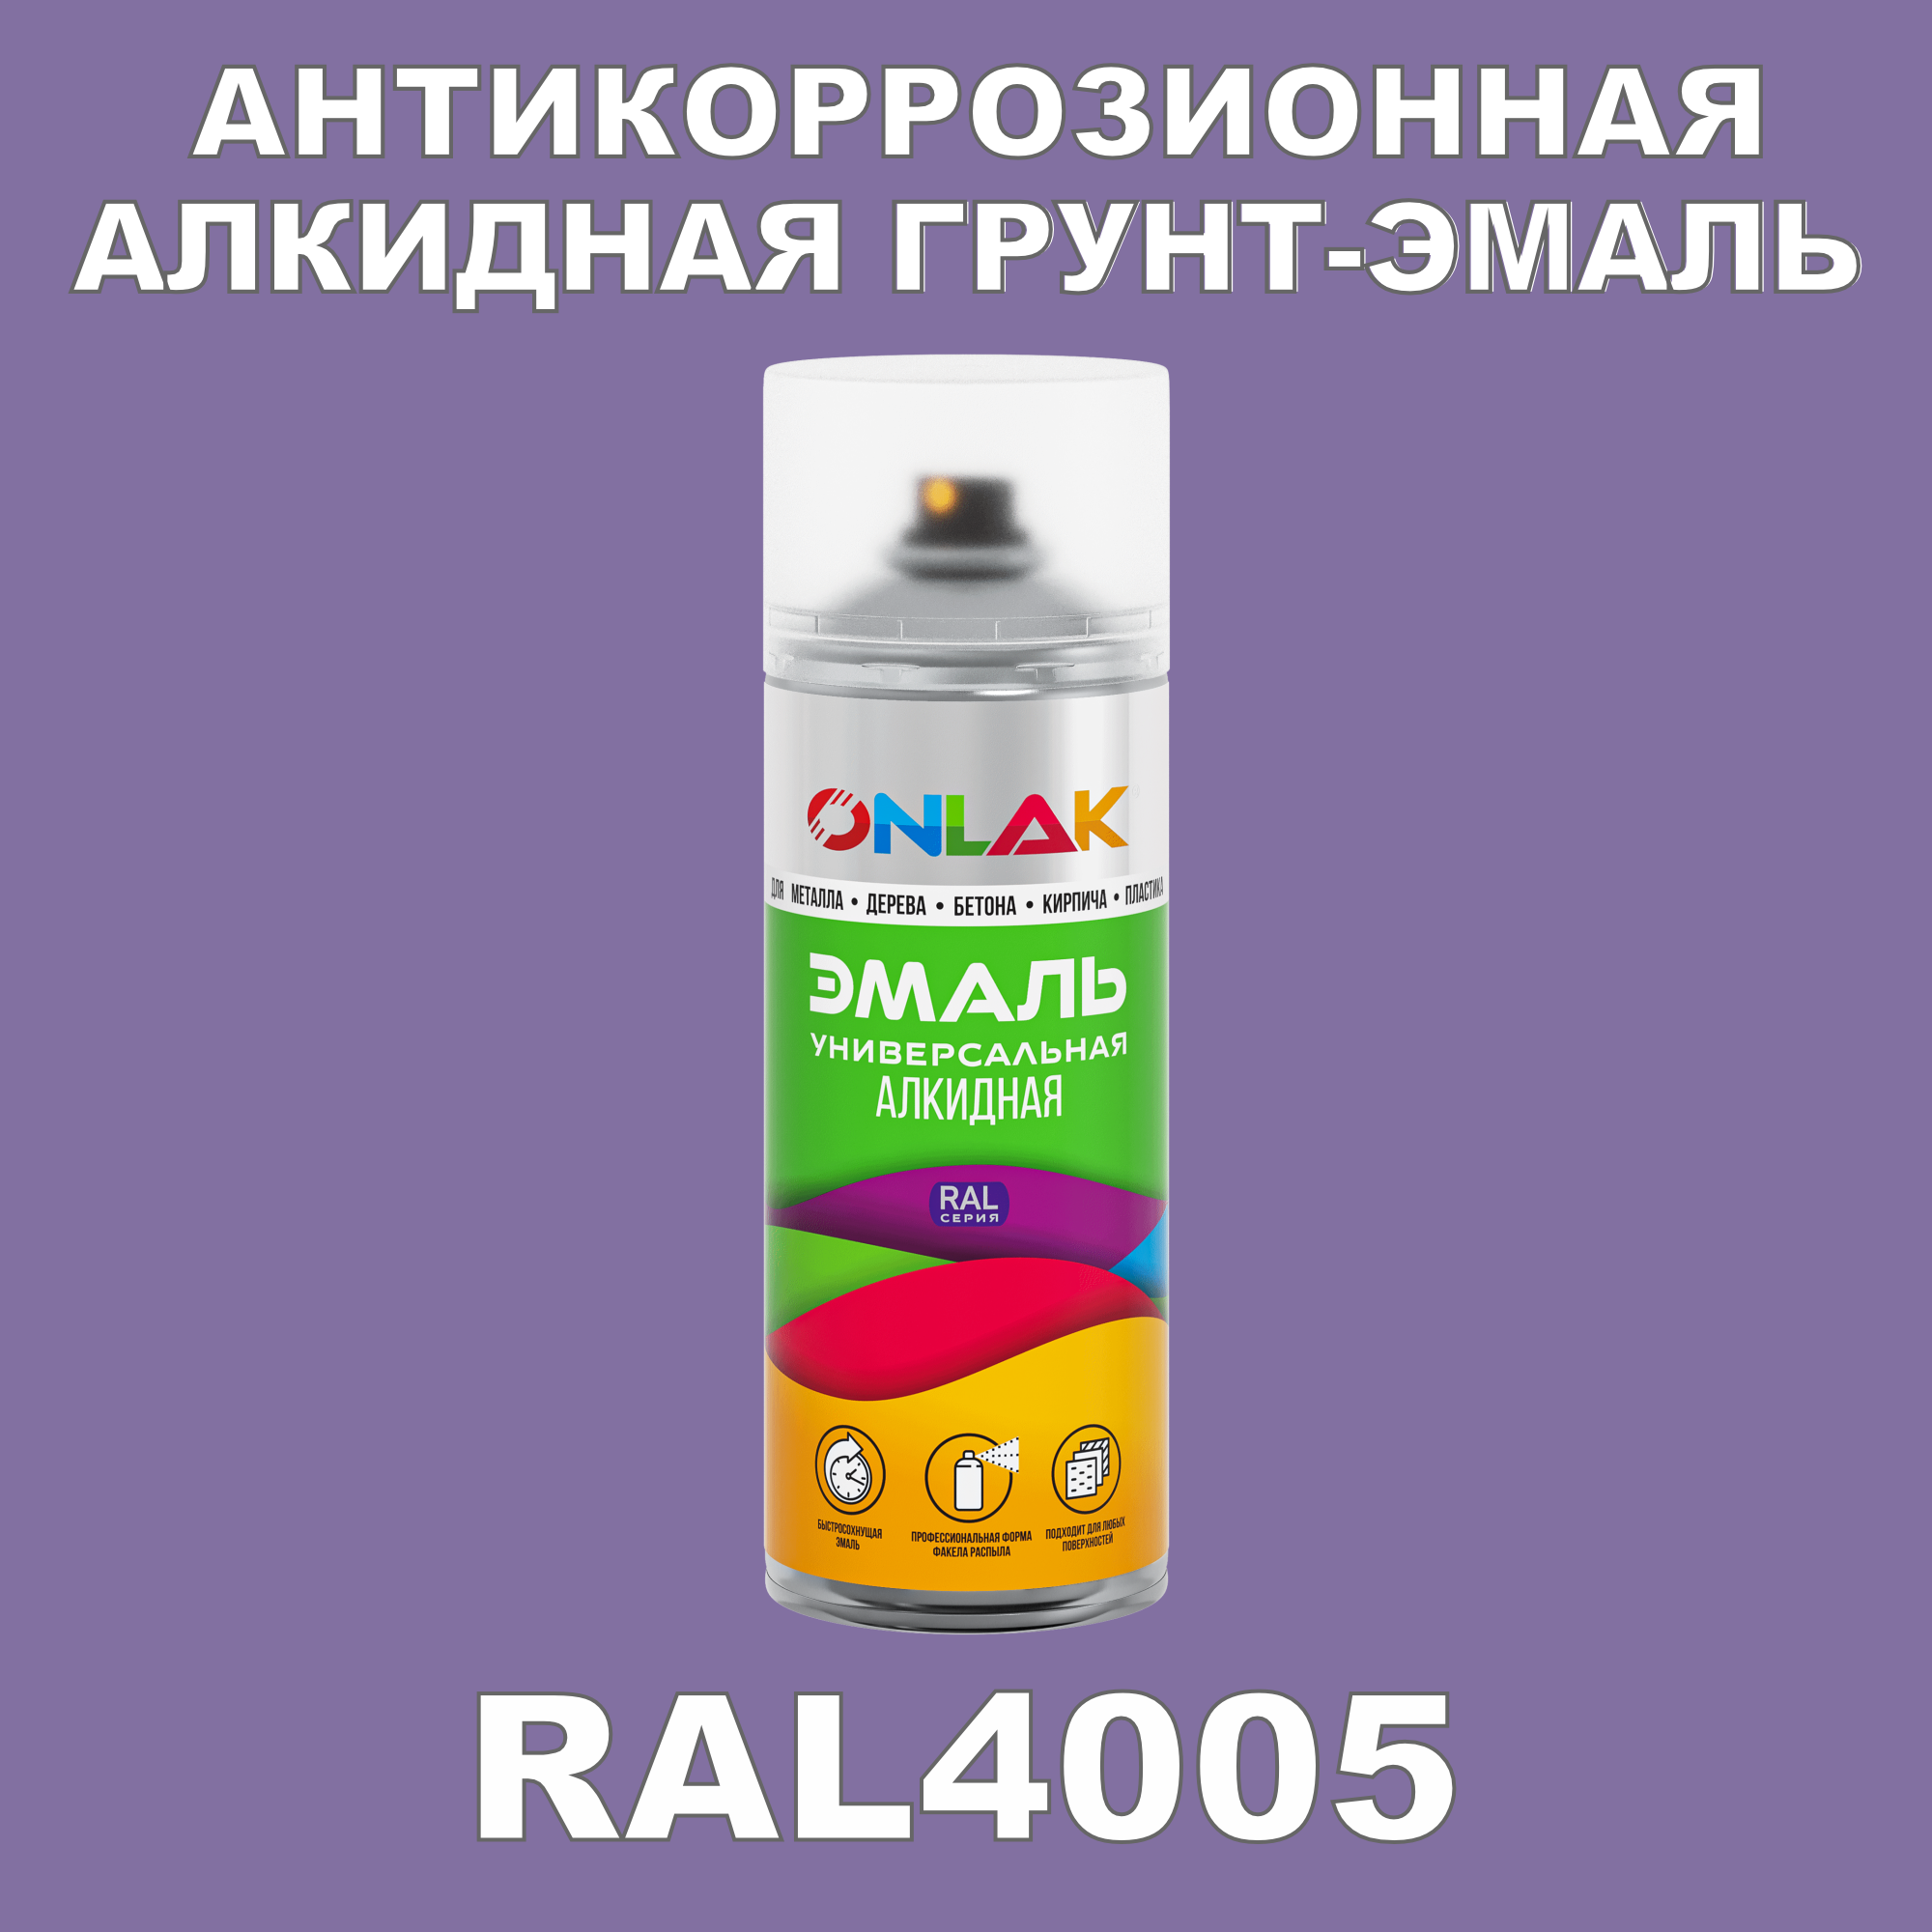 Антикоррозионная грунт-эмаль ONLAK RAL 4005,фиолетовый,662 мл рюкзак на молнии 2 наружных кармана розовый фиолетовый